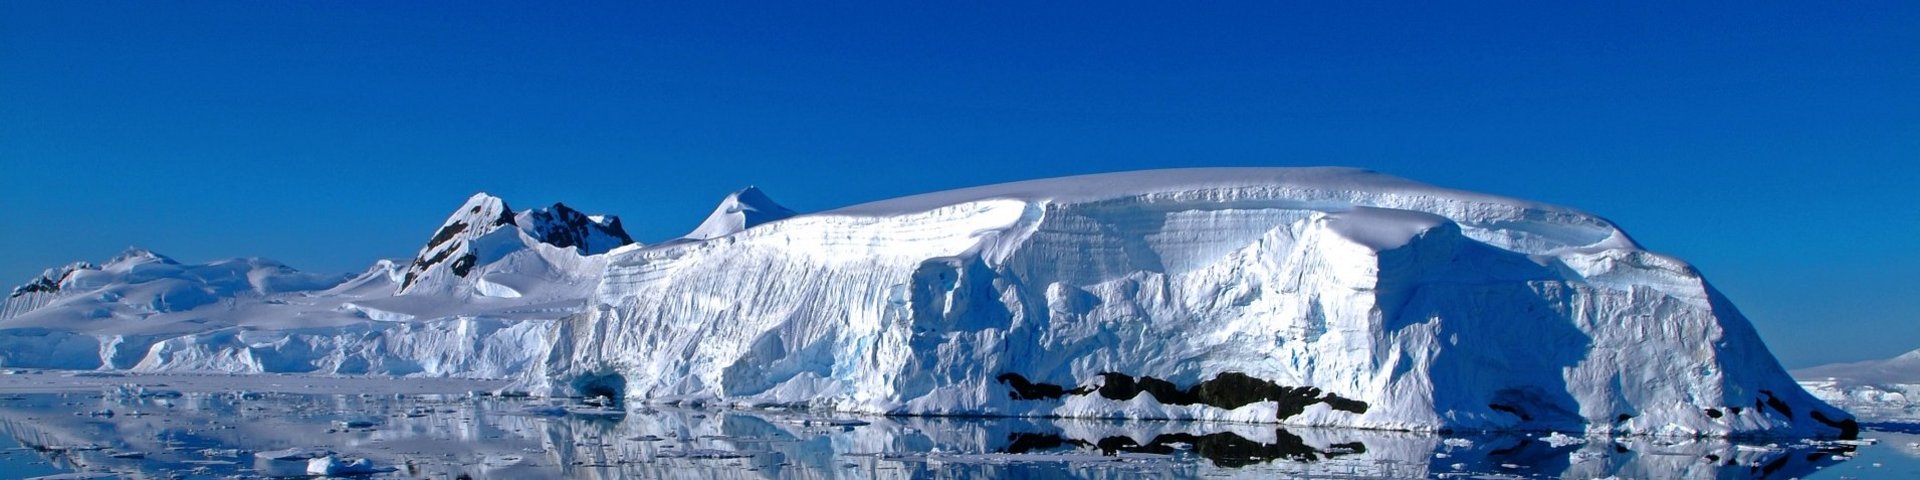 Eislandschaft in der Antarktis